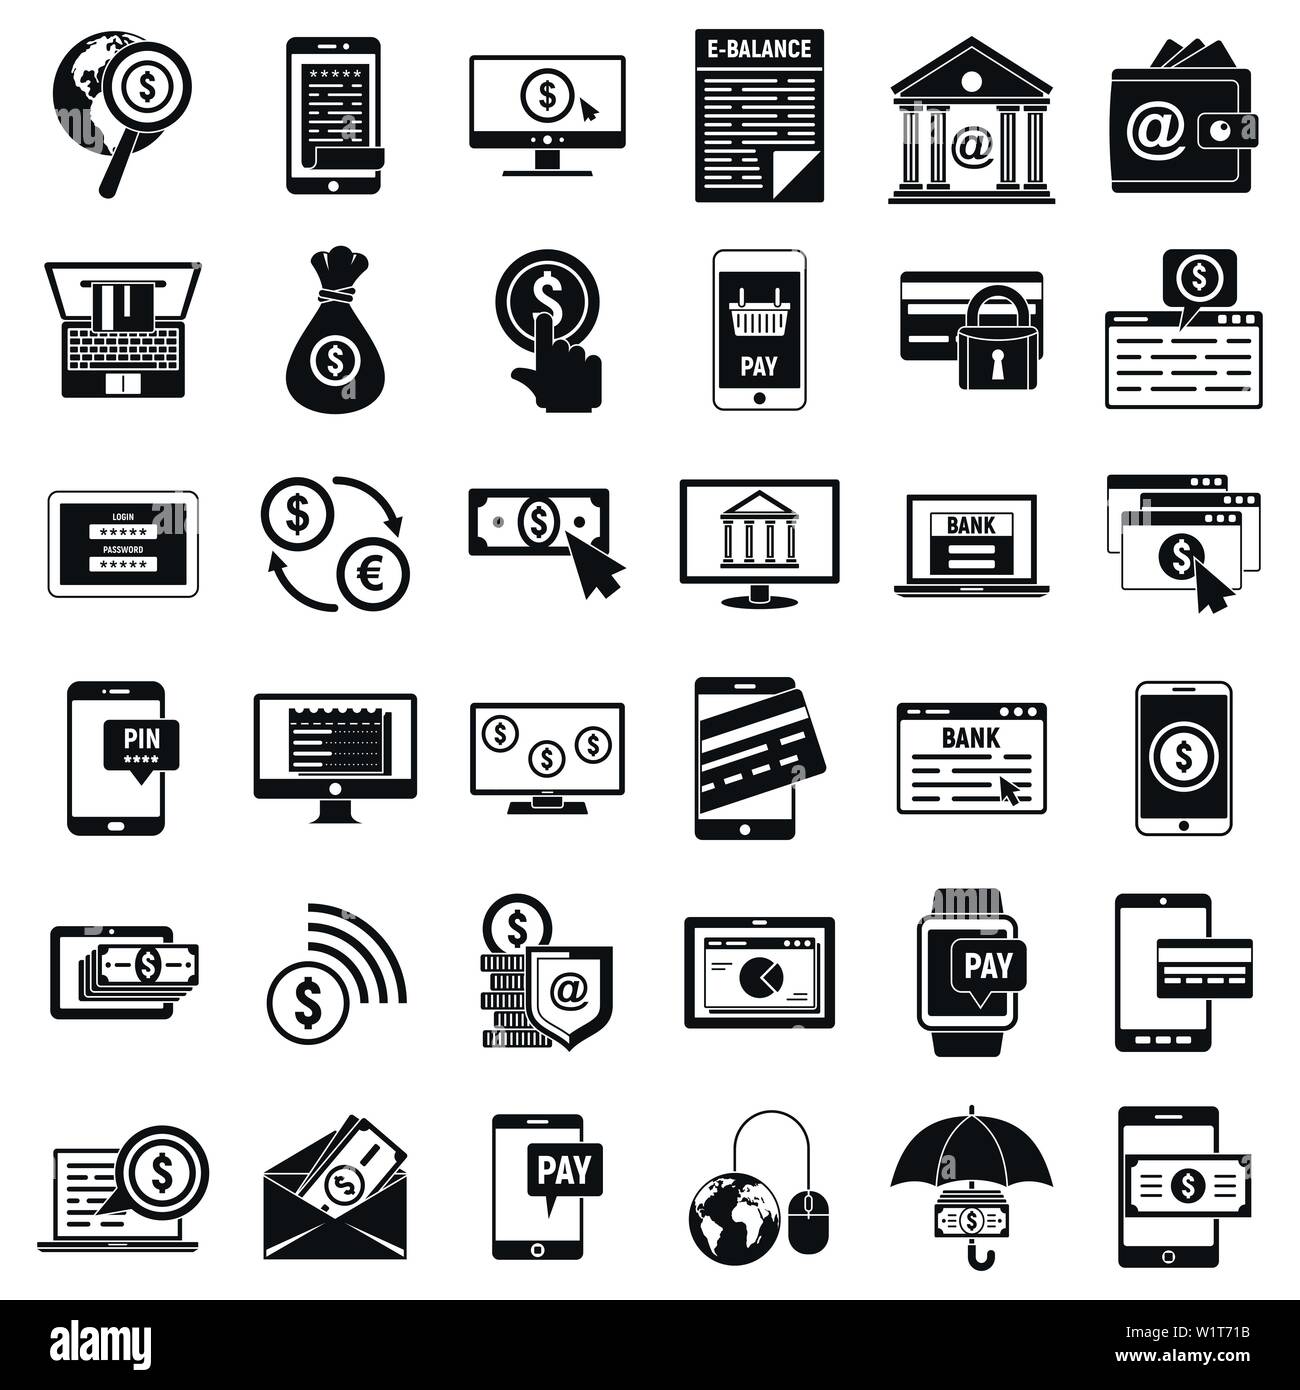 Geld Internet banking Symbole gesetzt. Einfaches Geld Internet banking Vector Icons für Web Design auf weißem Hintergrund Stock Vektor